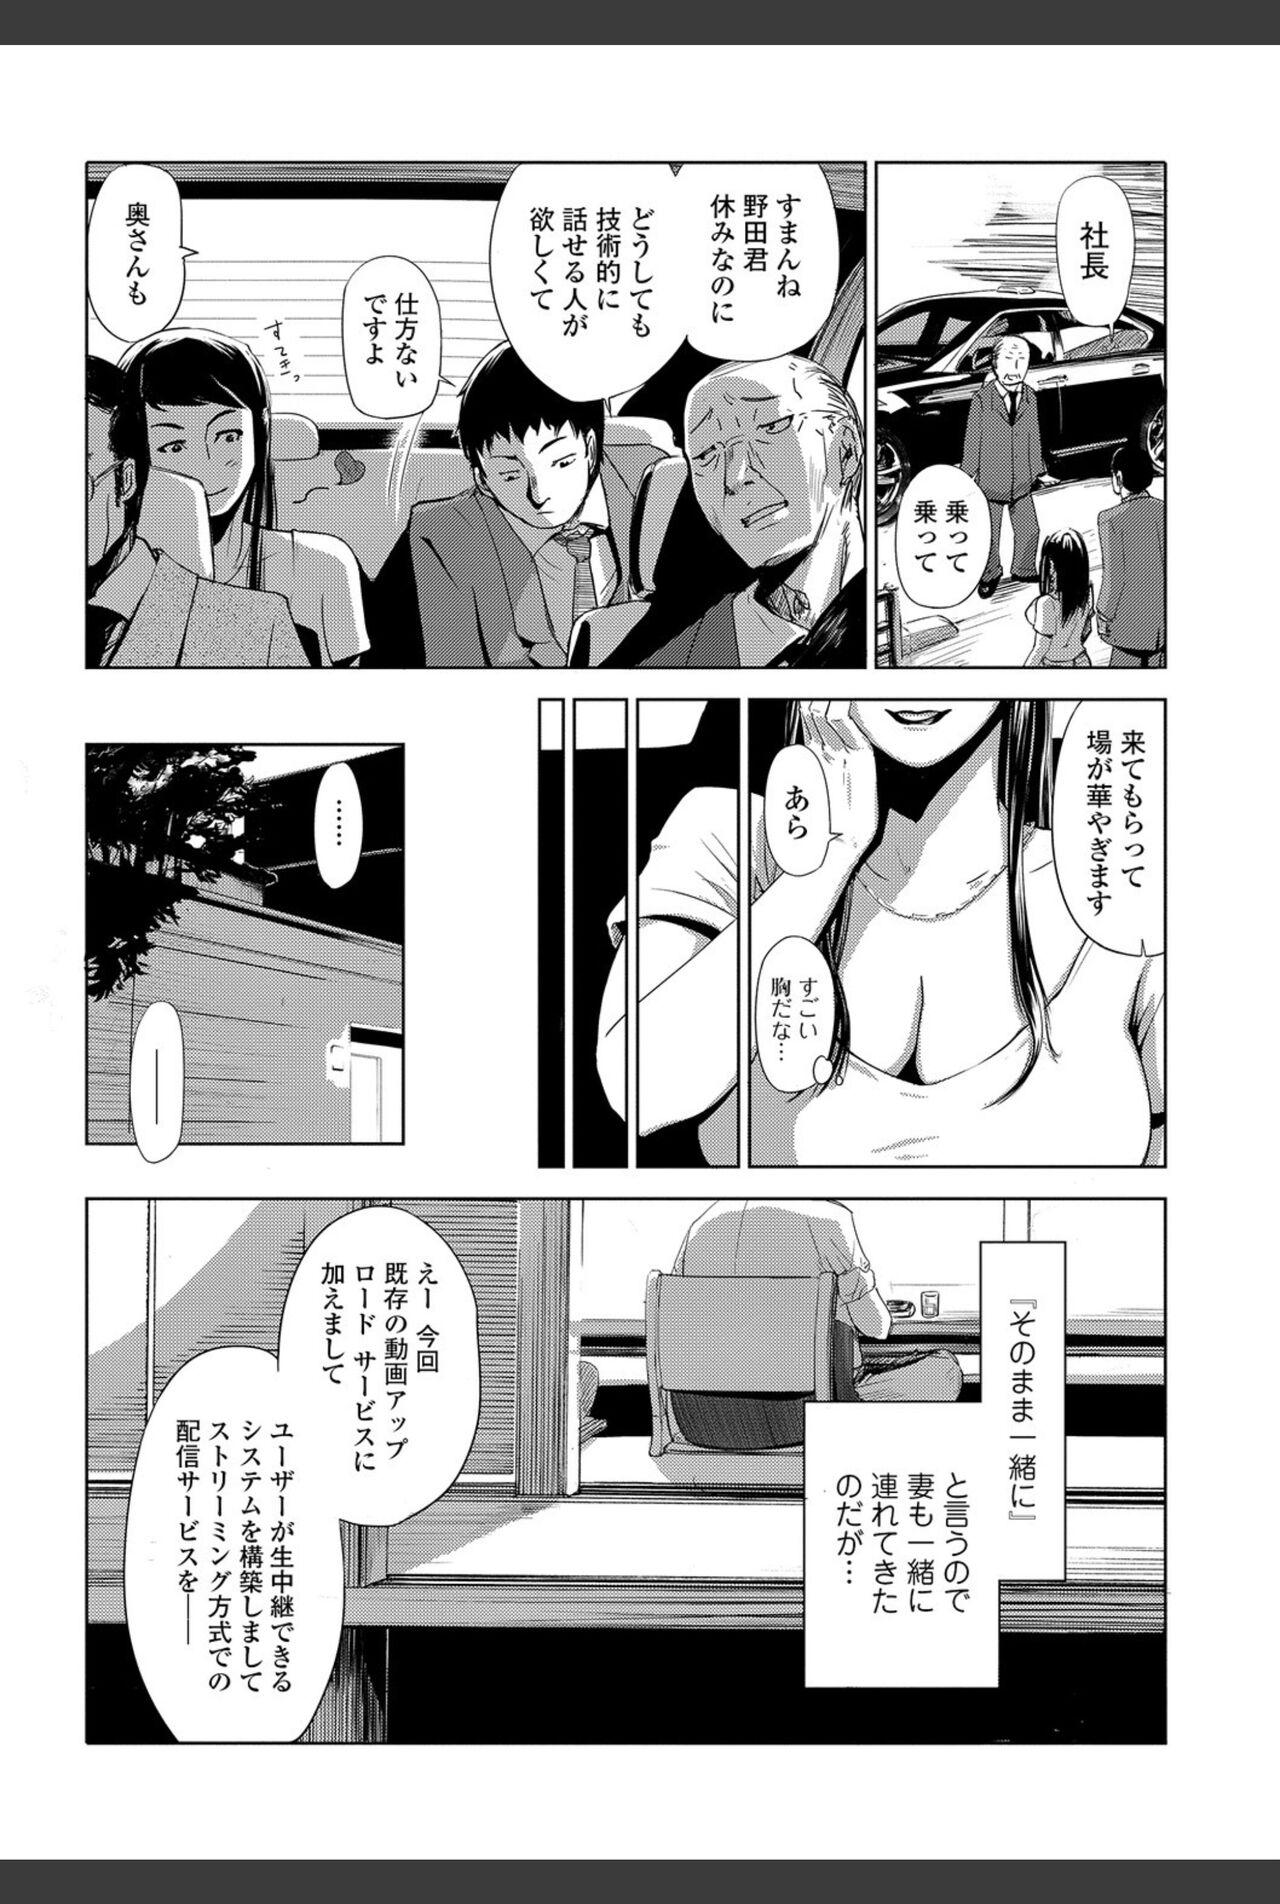 Bishoujo Kakumei KIWAME 2011-02 Vol.12 182